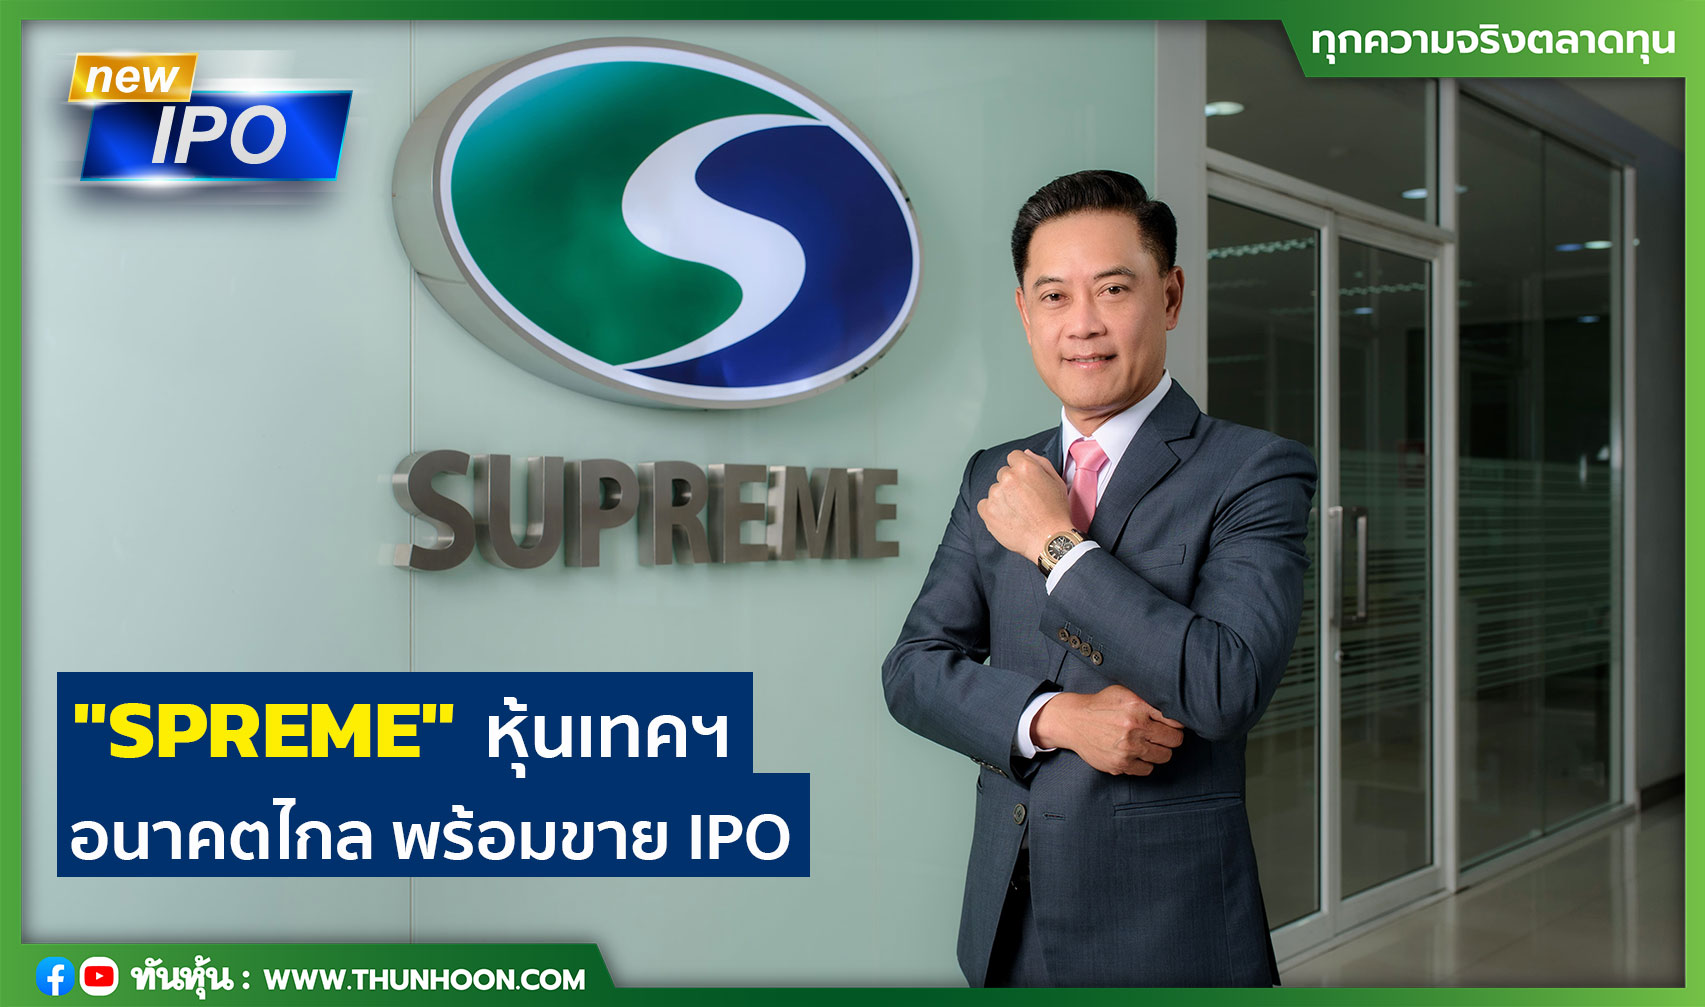 "SPREME" หุ้นเทคฯ อนาคตไกล พร้อมขาย IPO